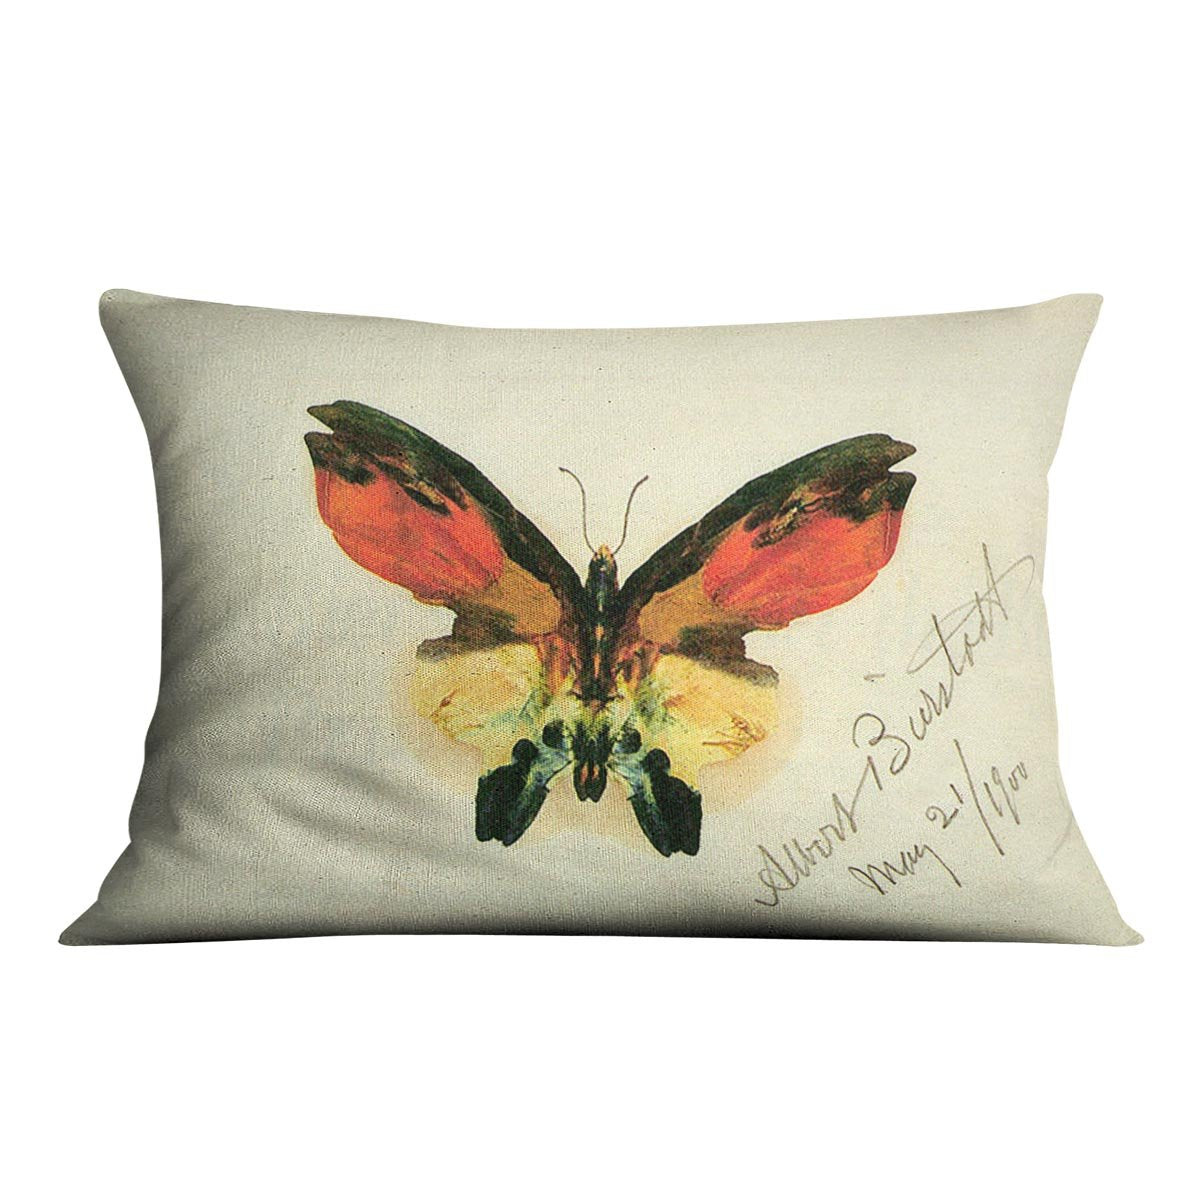 Butterfly 2 by Bierstadt Cushion - Canvas Art Rocks - 4